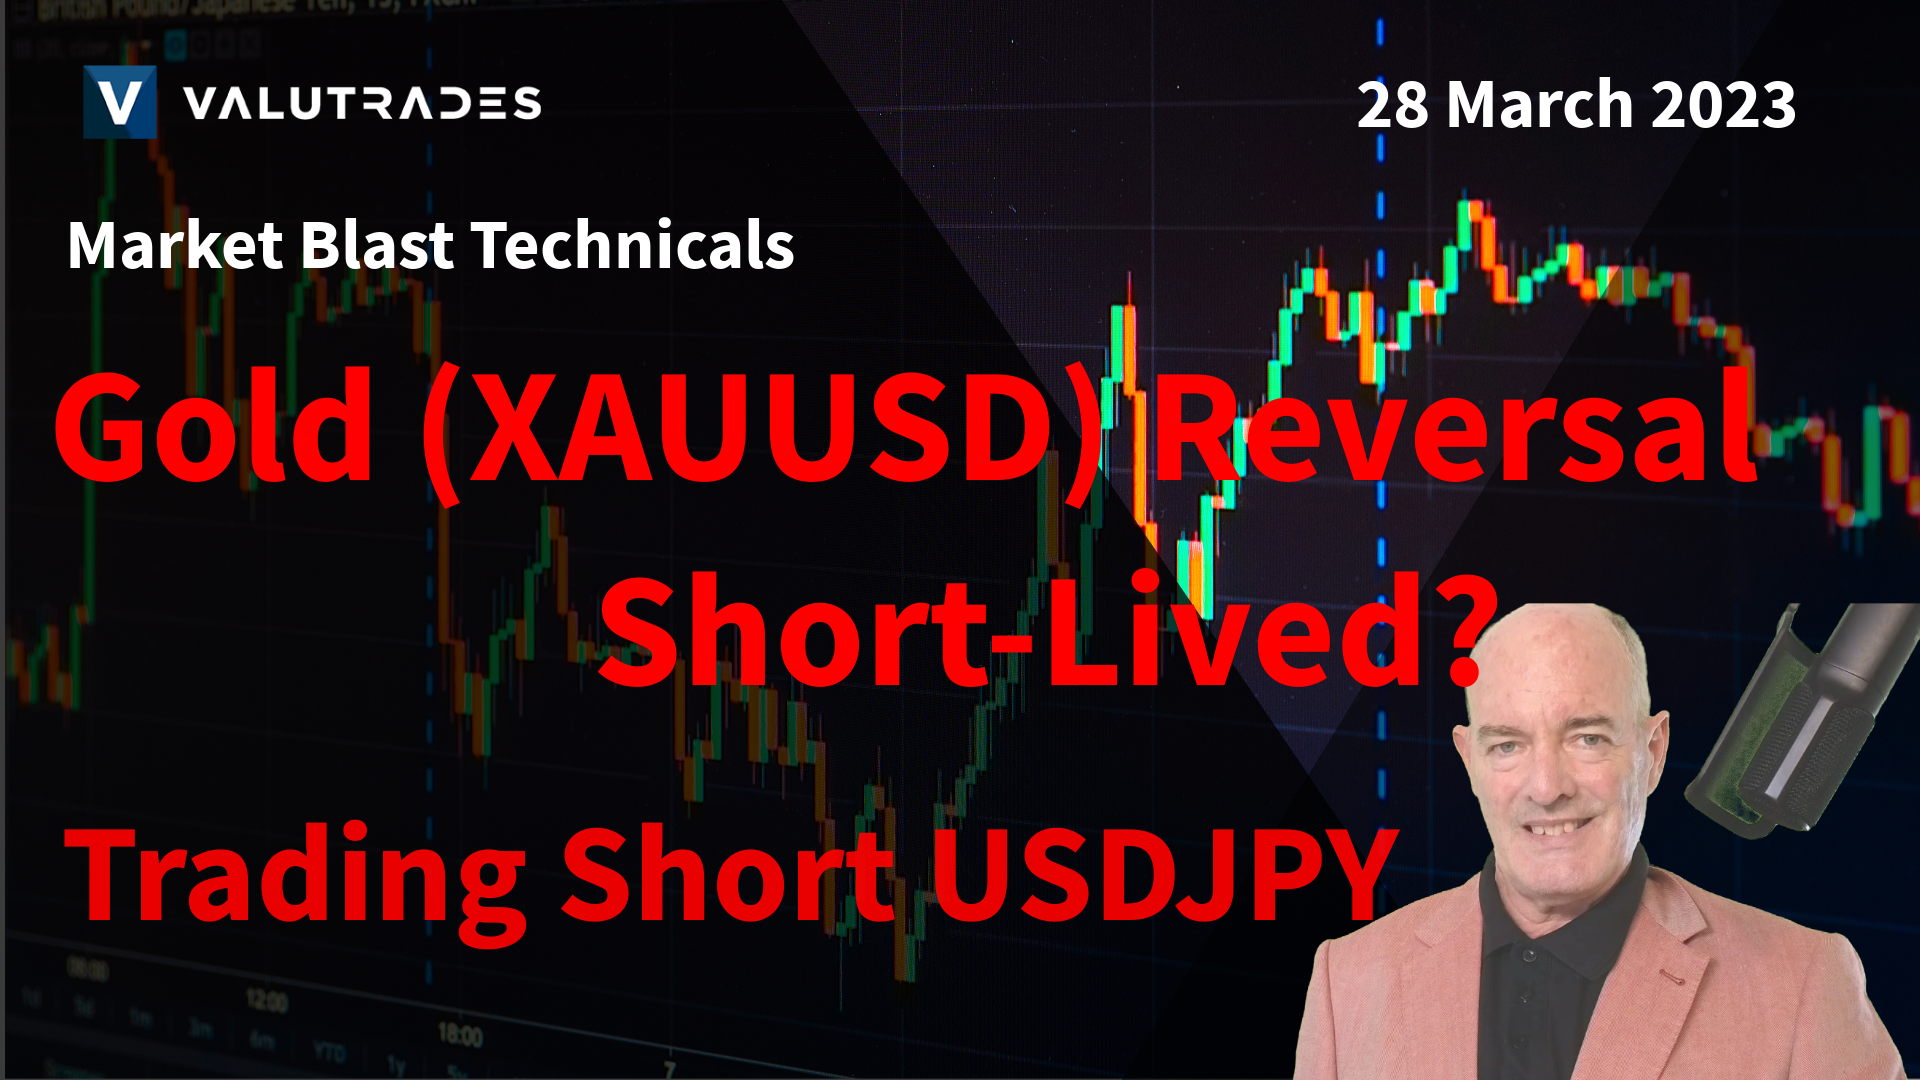 Gold (XAUUSD) Reversal Short-Lived? Trading Long NZDUSD. Trading Short USDJPY.